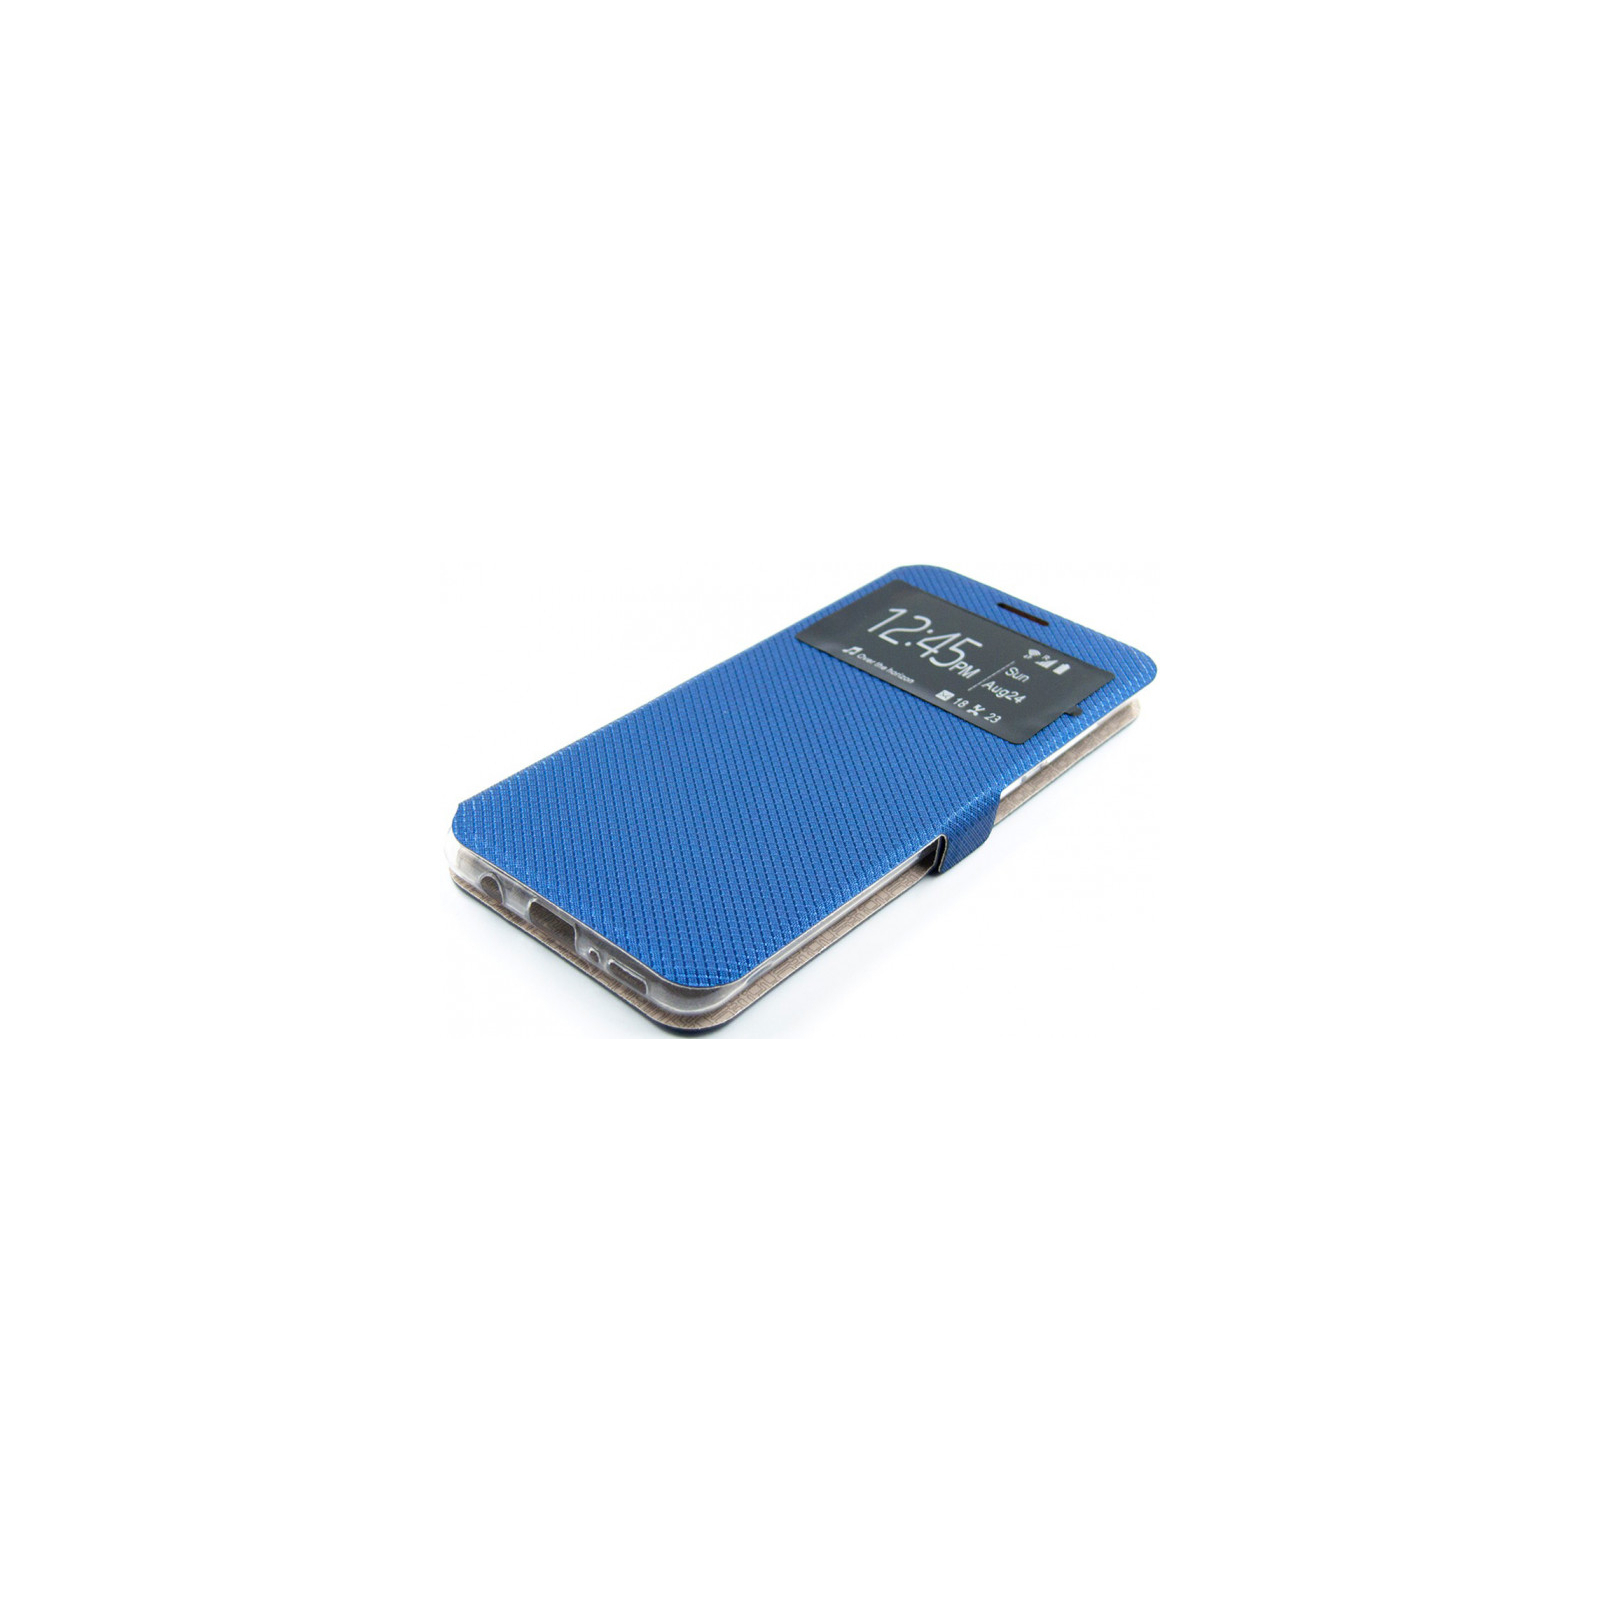 Чехол для мобильного телефона Dengos Flipp-Book Call ID Samsung Galaxy A31, black (DG-SL-BK-258) (DG-SL-BK-258) изображение 3